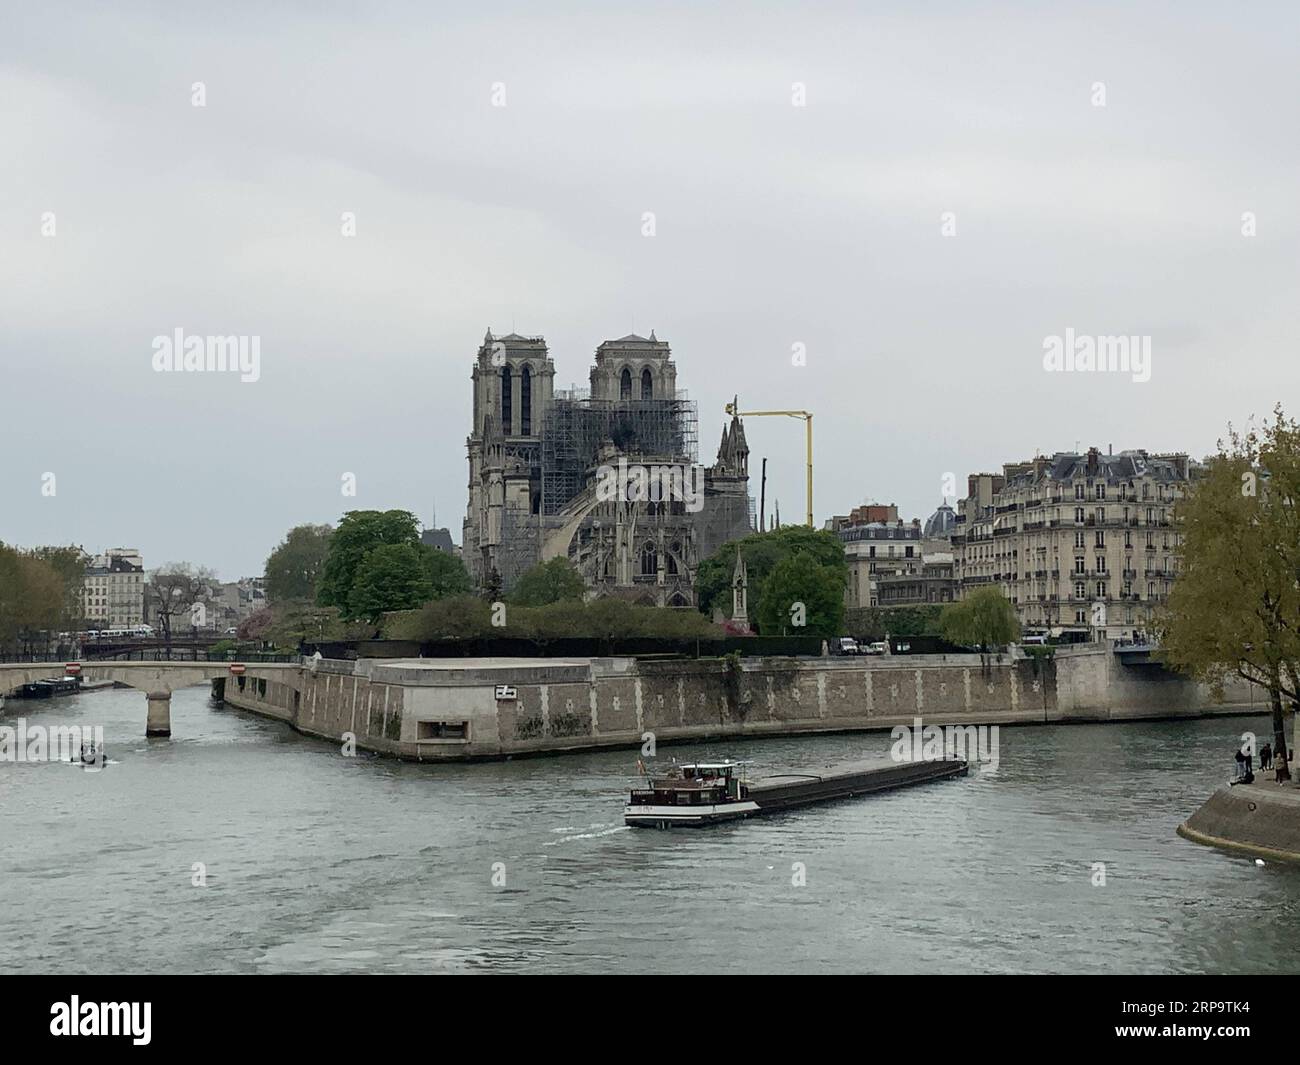 (190417) -- PARIS, 17. April 2019 (Xinhua) -- Foto vom 16. April 2019 zeigt die beschädigte Kathedrale Notre Dame nach einem Brand in Paris, Frankreich. Der französische Präsident Emmanuel Macron versprach am Dienstag, innerhalb von fünf Jahren die Kathedrale Notre Dame, die am Montagabend vom Feuer verwüstet wurde, wieder aufzubauen und forderte die Franzosen auf, vereint zu bleiben. Am frühen Montagabend brach in der berühmten Kathedrale ein Feuer aus. Online-Aufnahmen zeigten dicken Rauch, der von der Spitze der Kathedrale wehte, und riesige Flammen zwischen ihren beiden Glockentürmen, die den Turm und das gesamte Dach umschlossen, die beide später zusammenbrachen. (Xinhua/Zheng bin) FRA Stockfoto